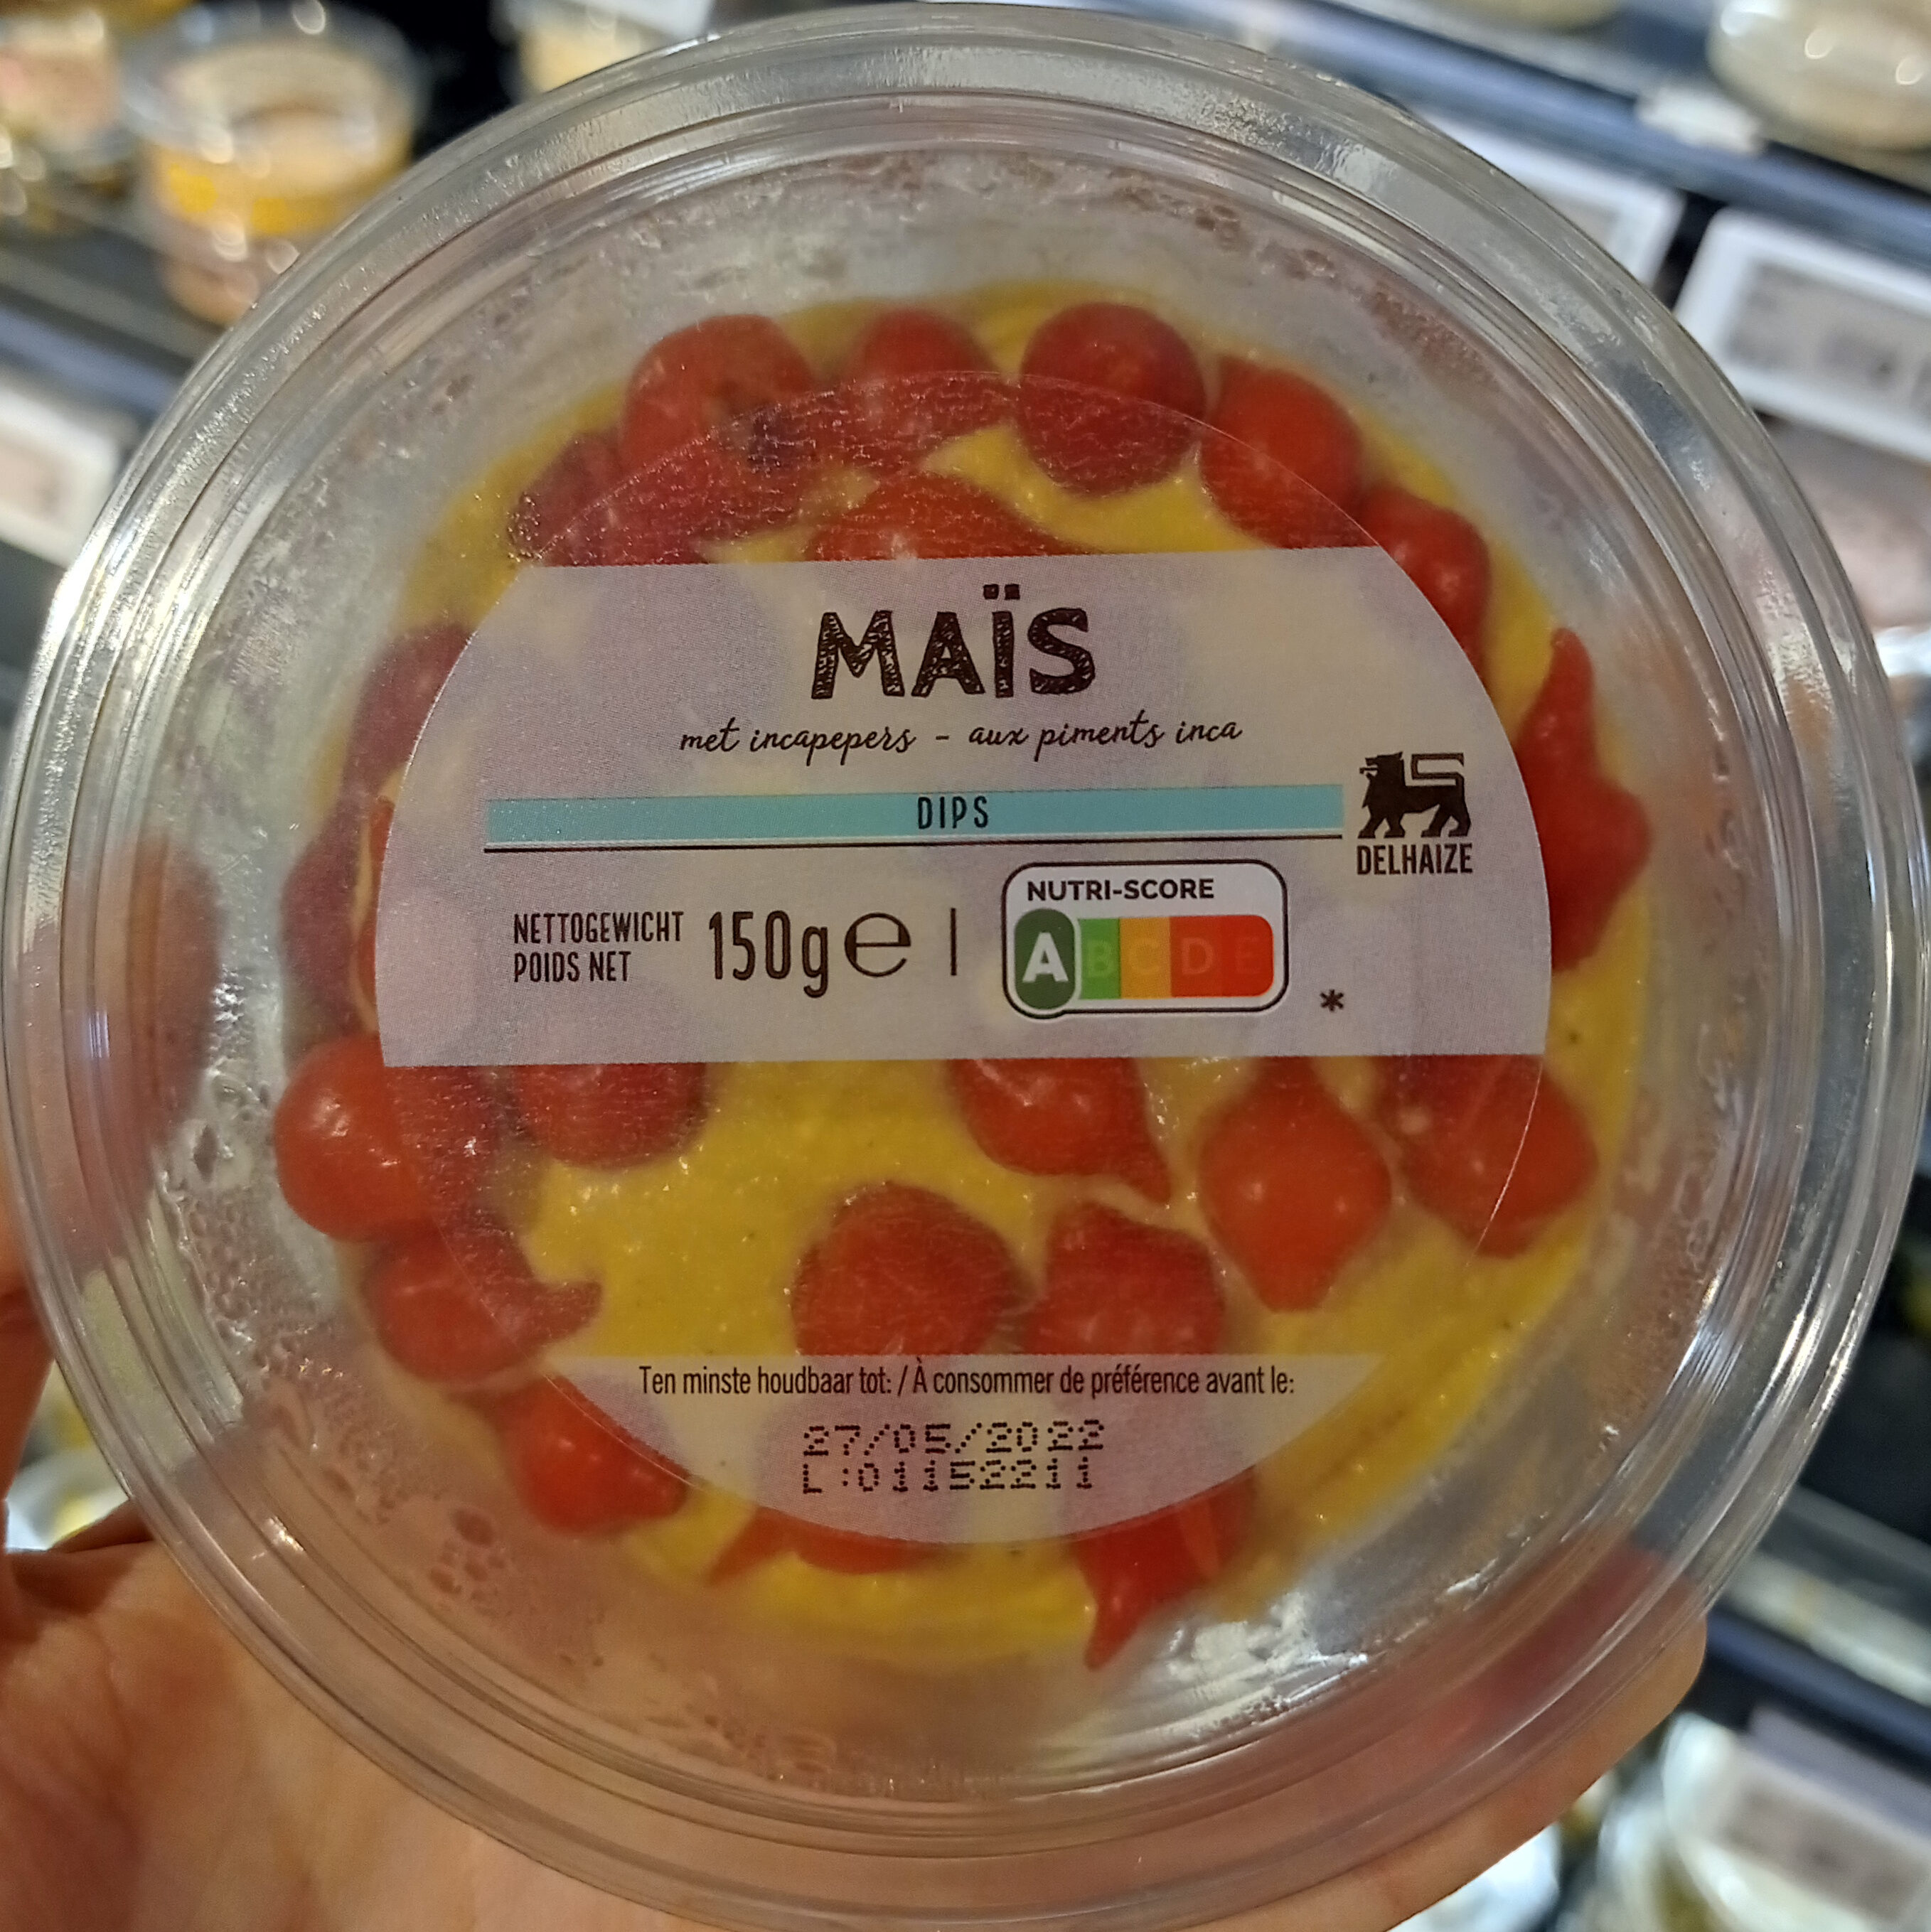 Maïs dips - Product - fr